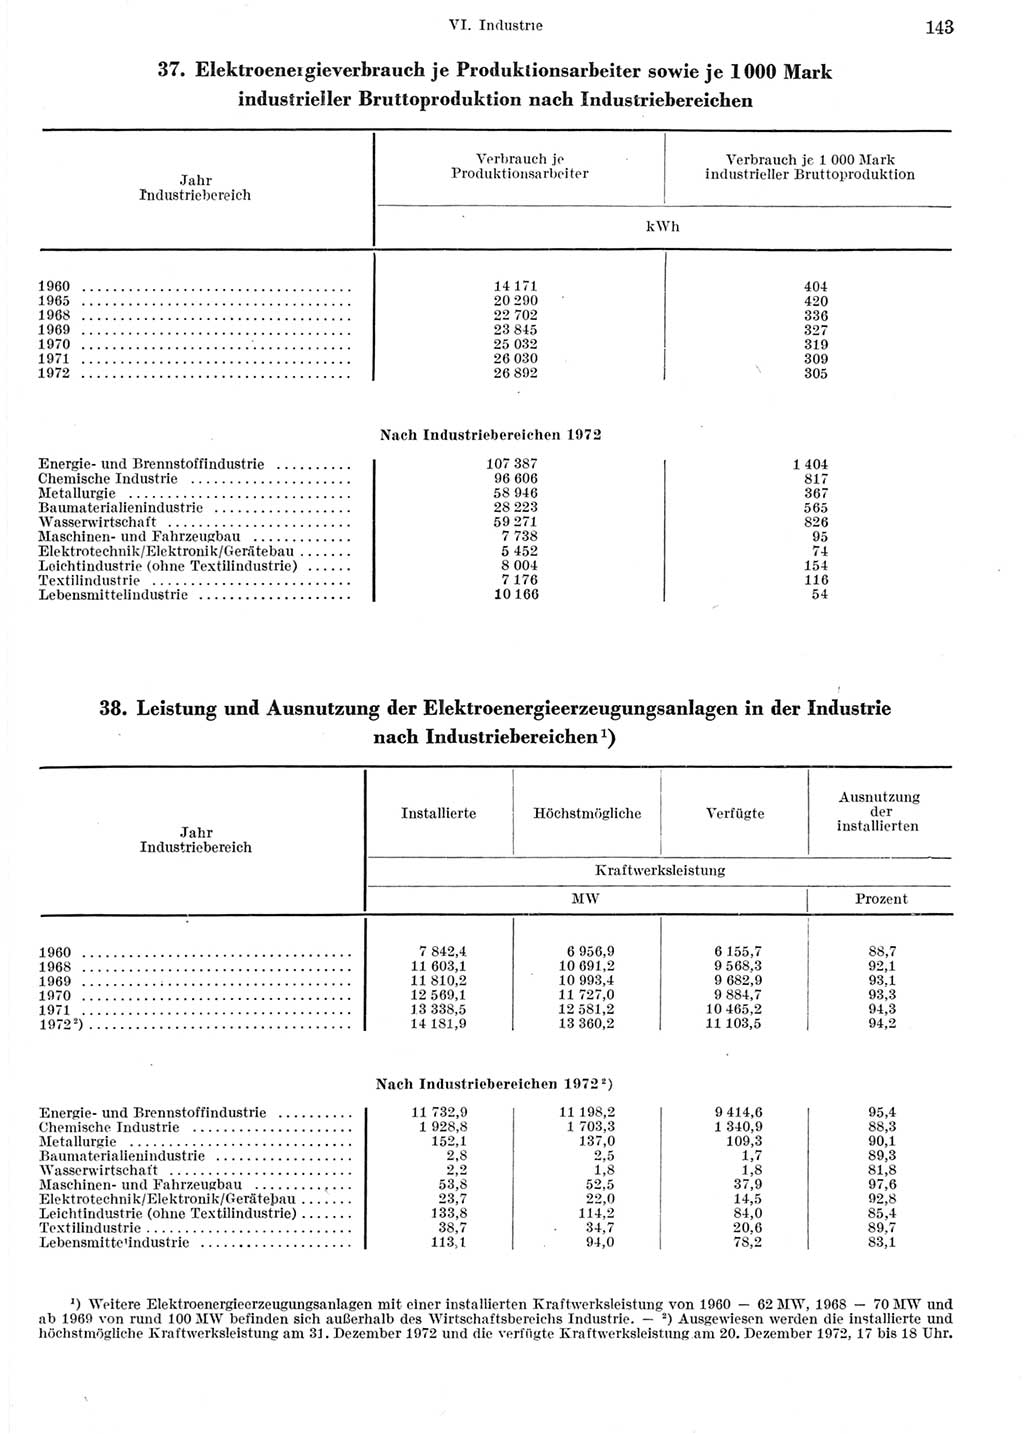 Statistisches Jahrbuch der Deutschen Demokratischen Republik (DDR) 1973, Seite 143 (Stat. Jb. DDR 1973, S. 143)